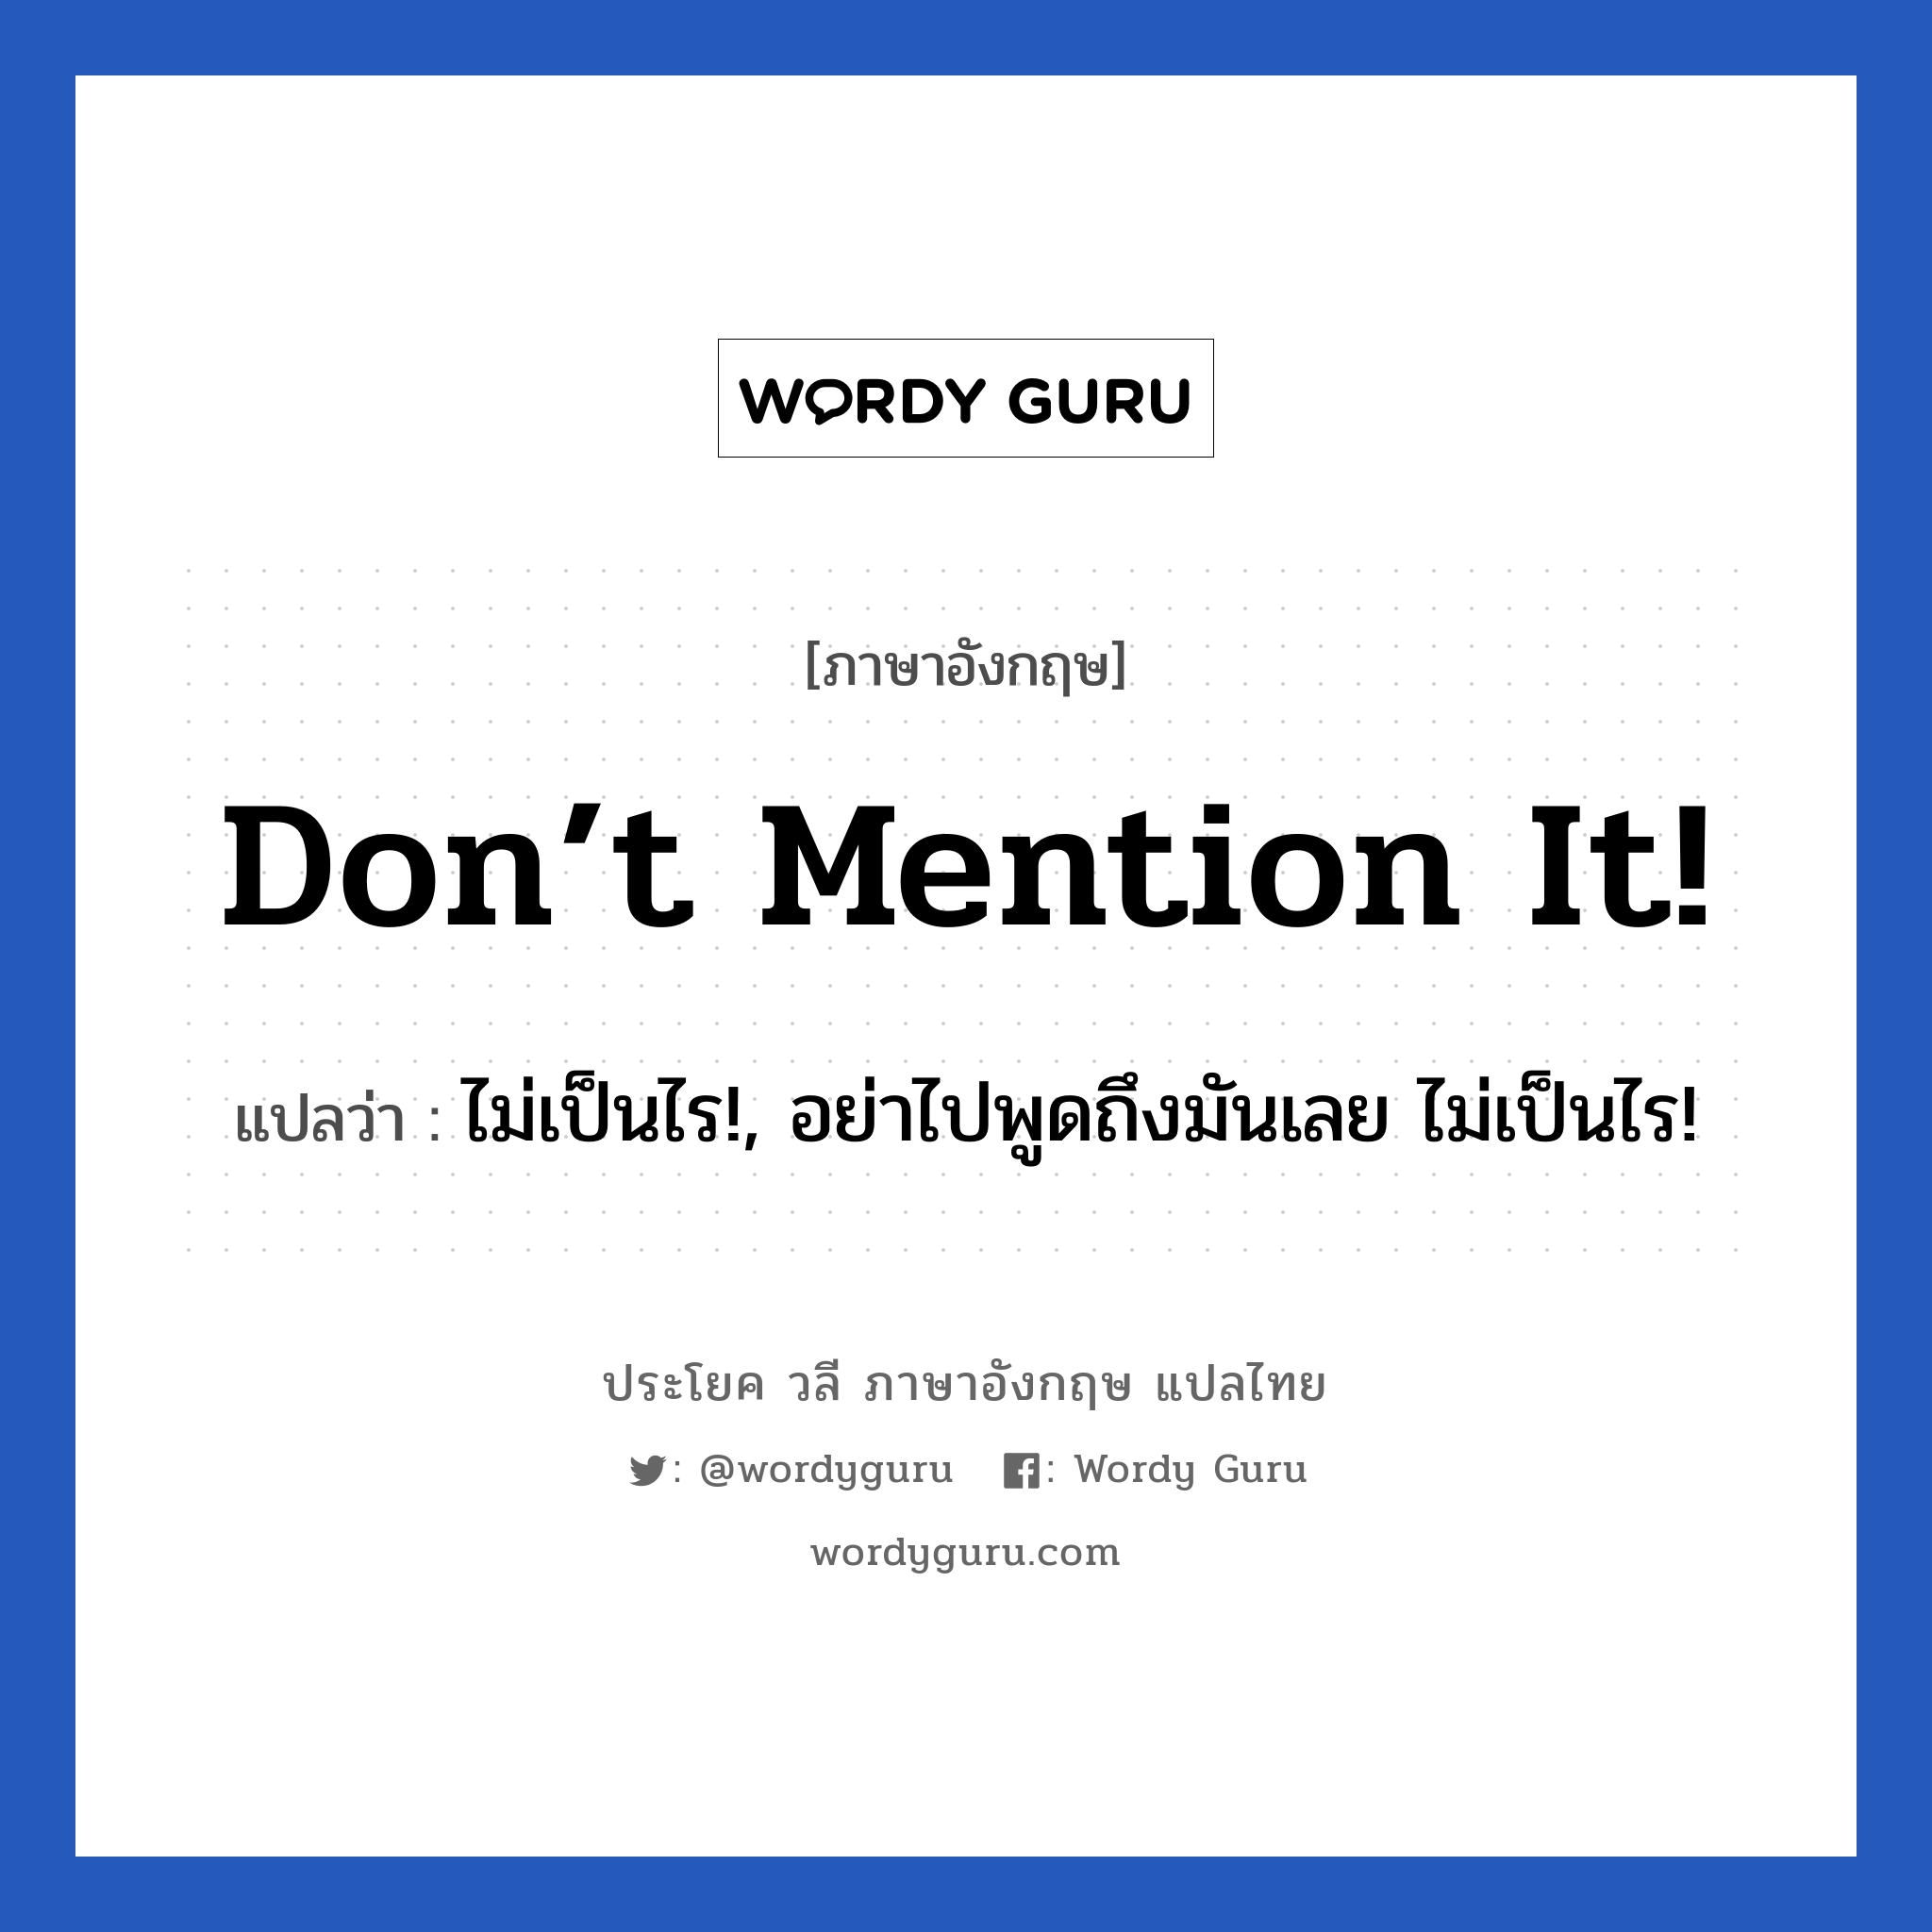 Don’t mention it! แปลว่า?, วลีภาษาอังกฤษ Don’t mention it! แปลว่า ไม่เป็นไร!, อย่าไปพูดถึงมันเลย ไม่เป็นไร!